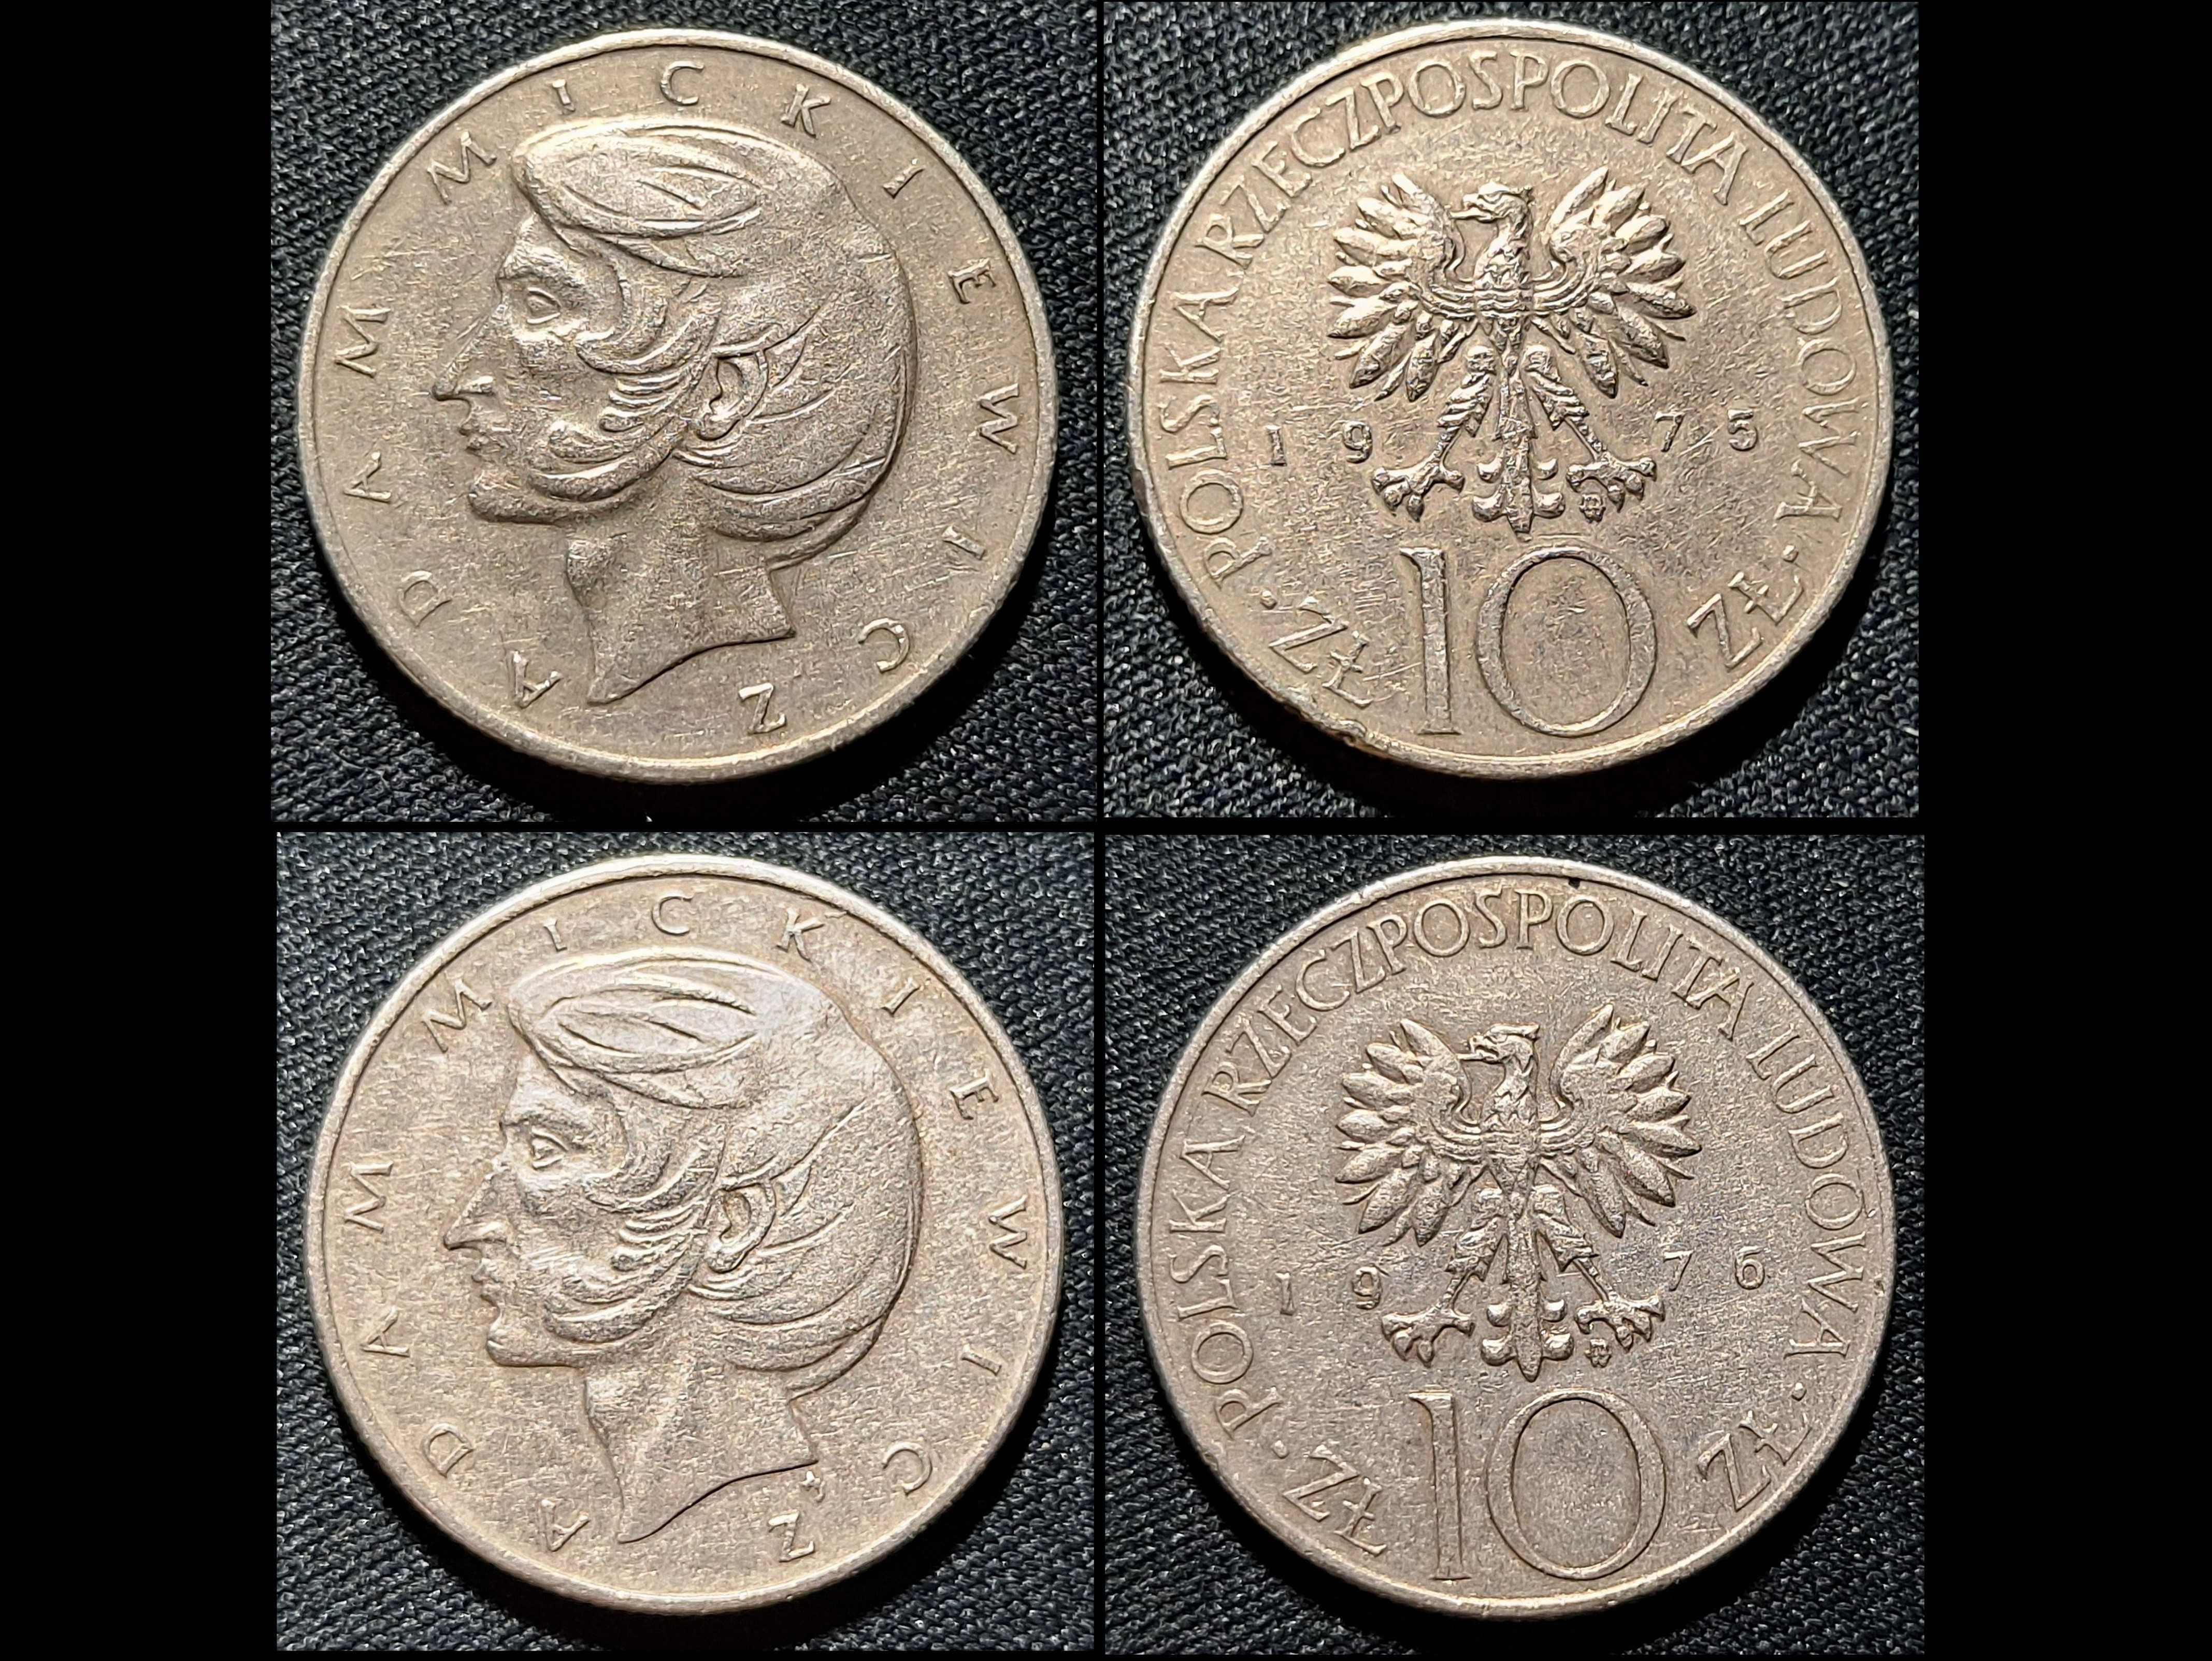 10 złotych - A.Mickiewicz - zestaw 2 szt. monet z 1975 i 76 roku